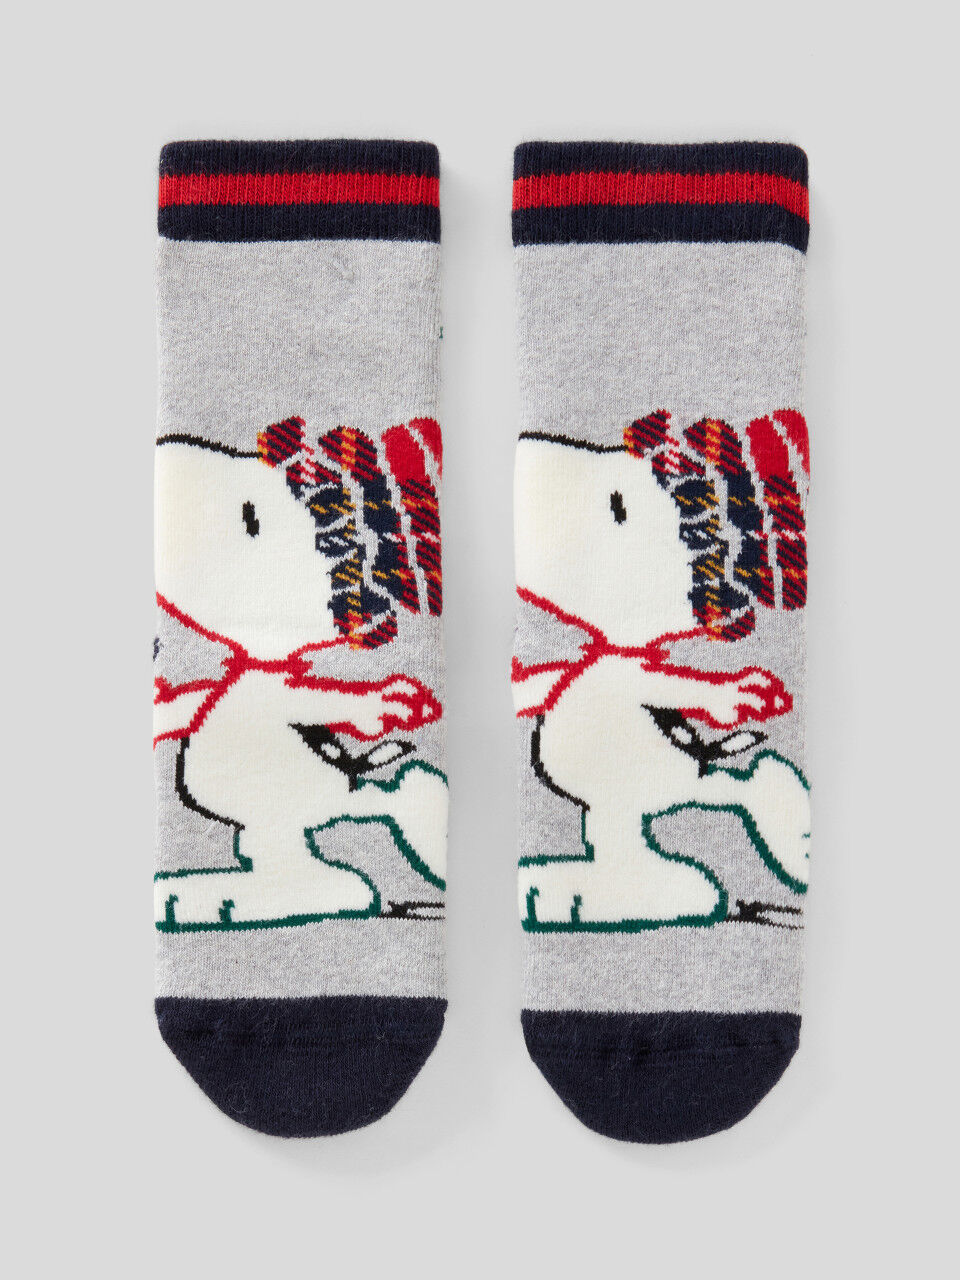 Calcetines navideños de Snoopy